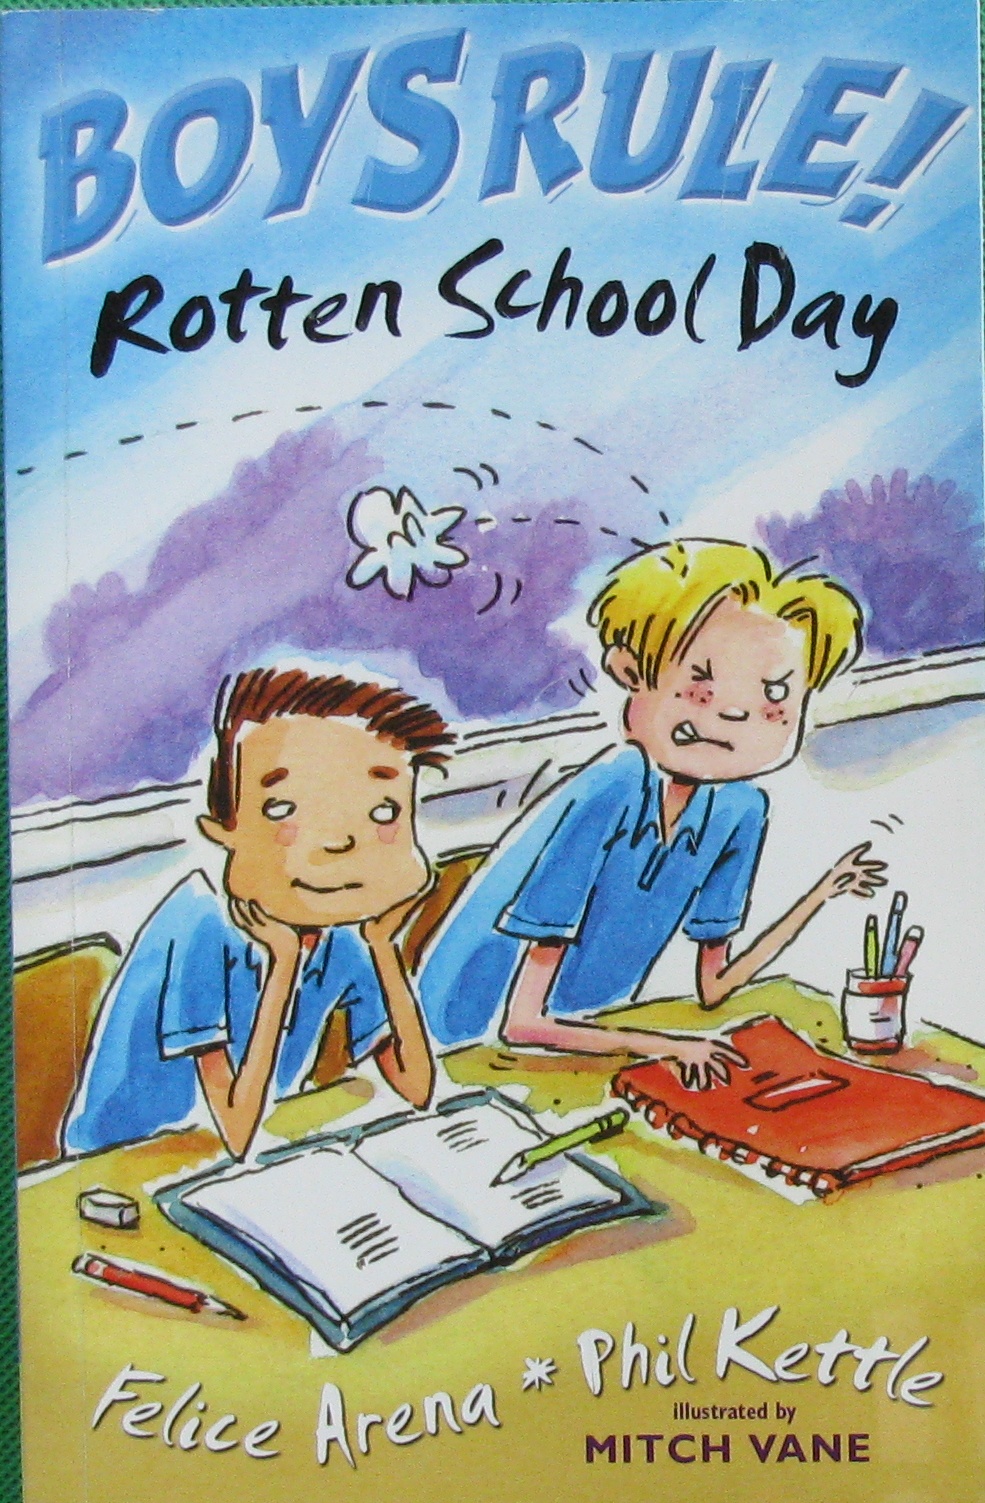 boys rule! rotten school day